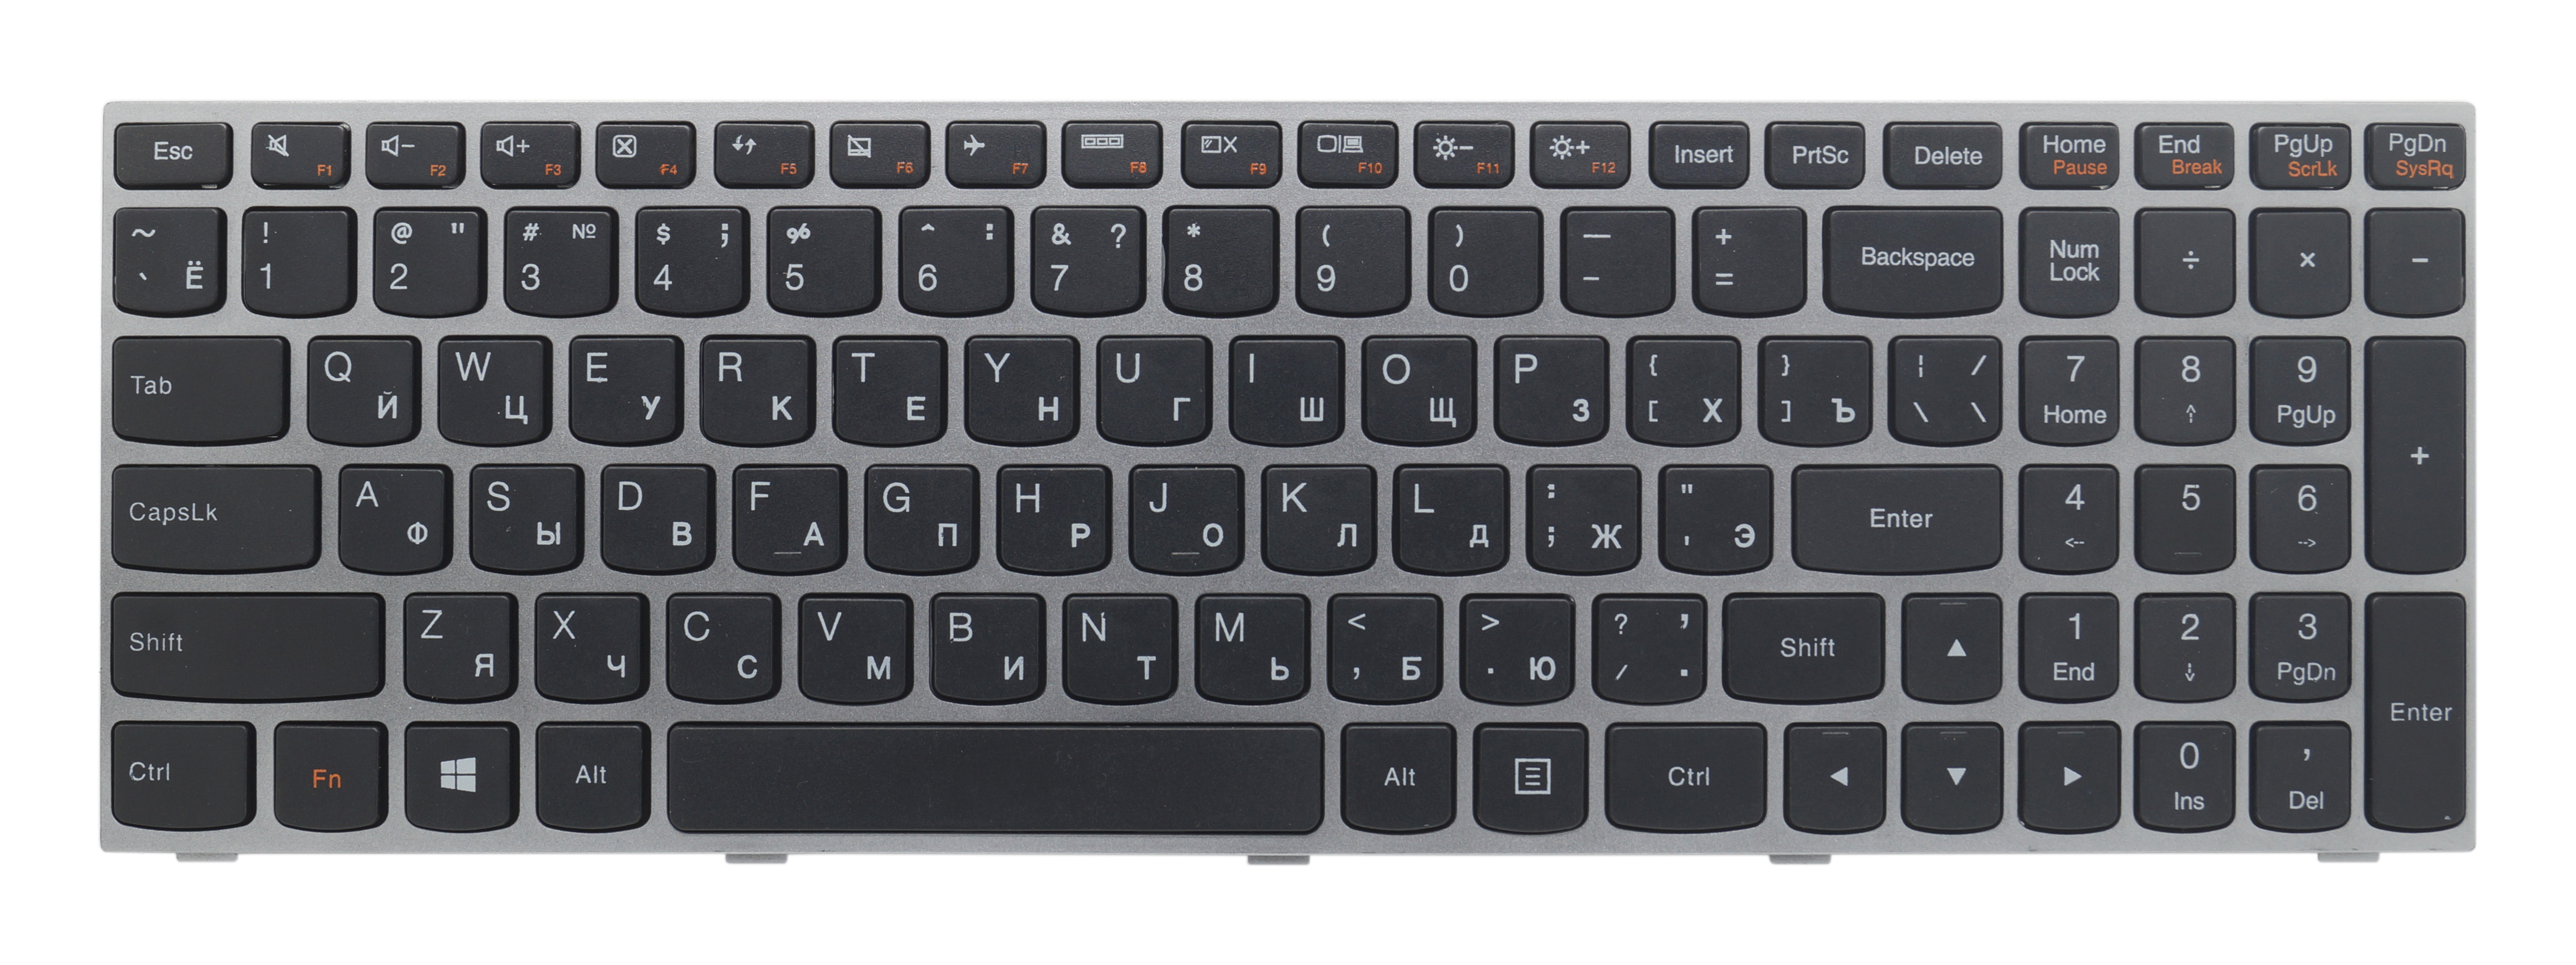 Ноутбук леново z500 клавиатура